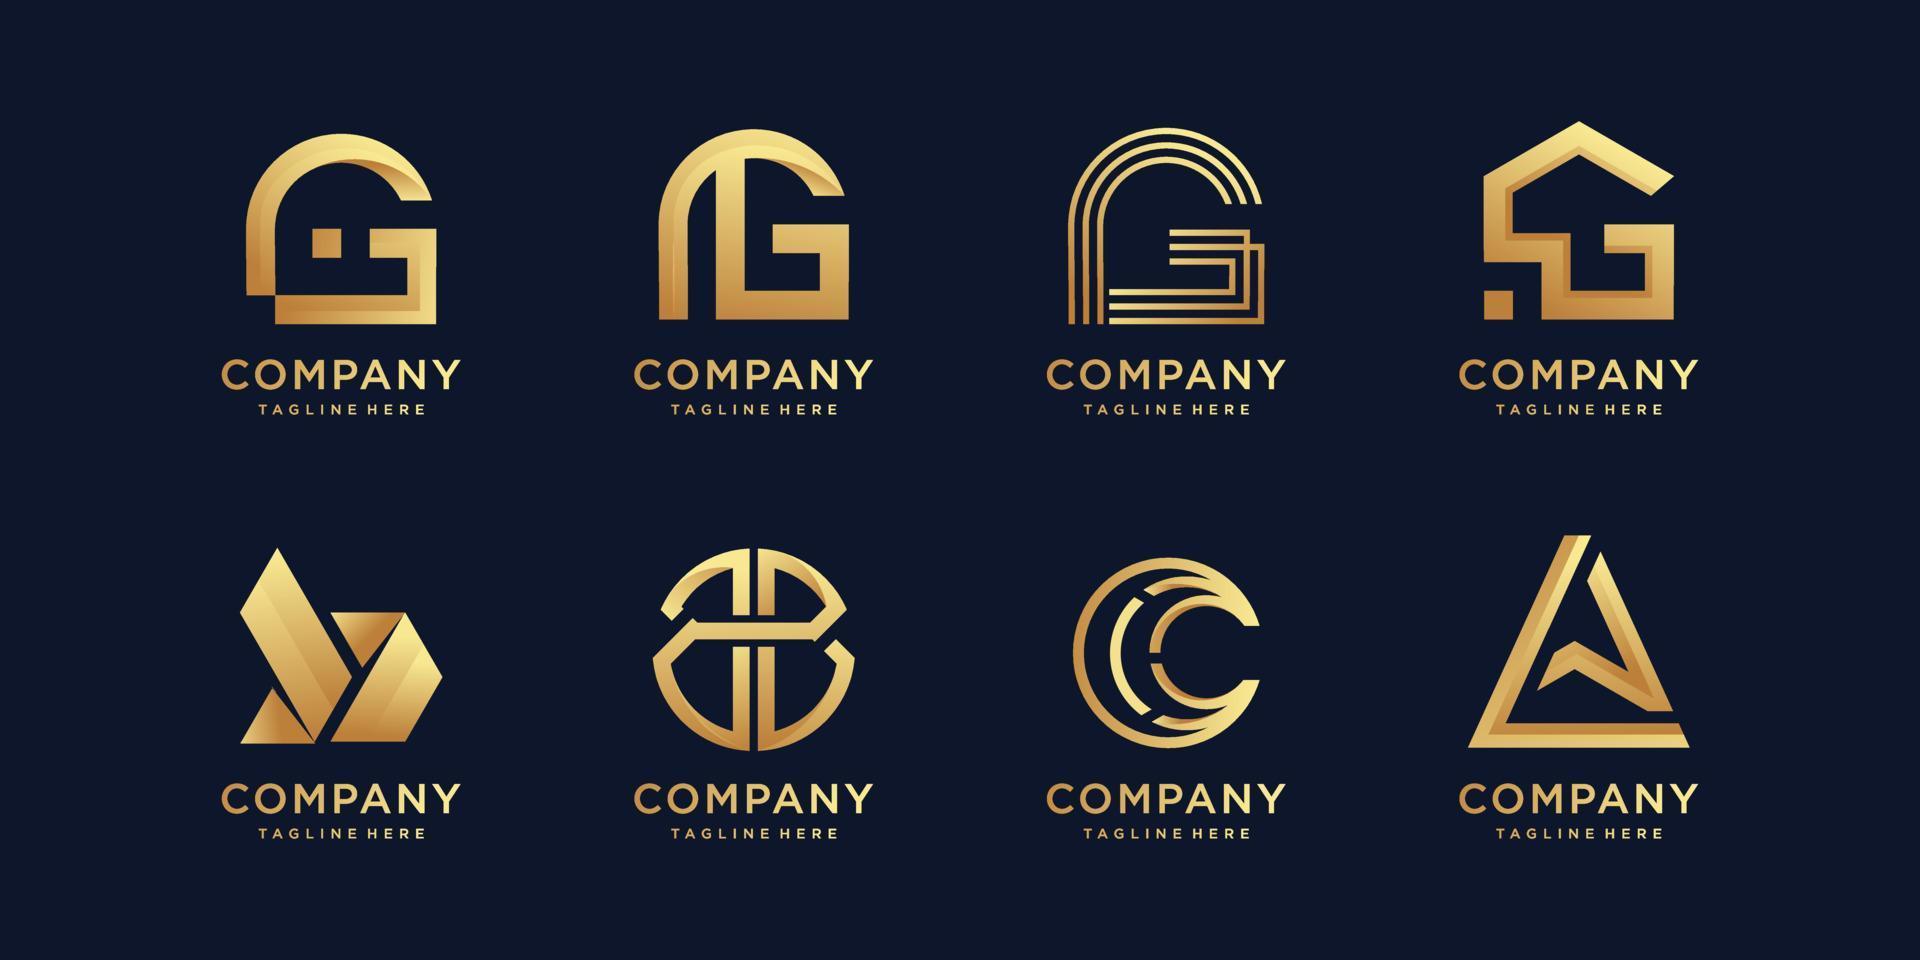 conjunto de colección de logotipos con letra inicial g, b, c, a y vector premium de estilo dorado